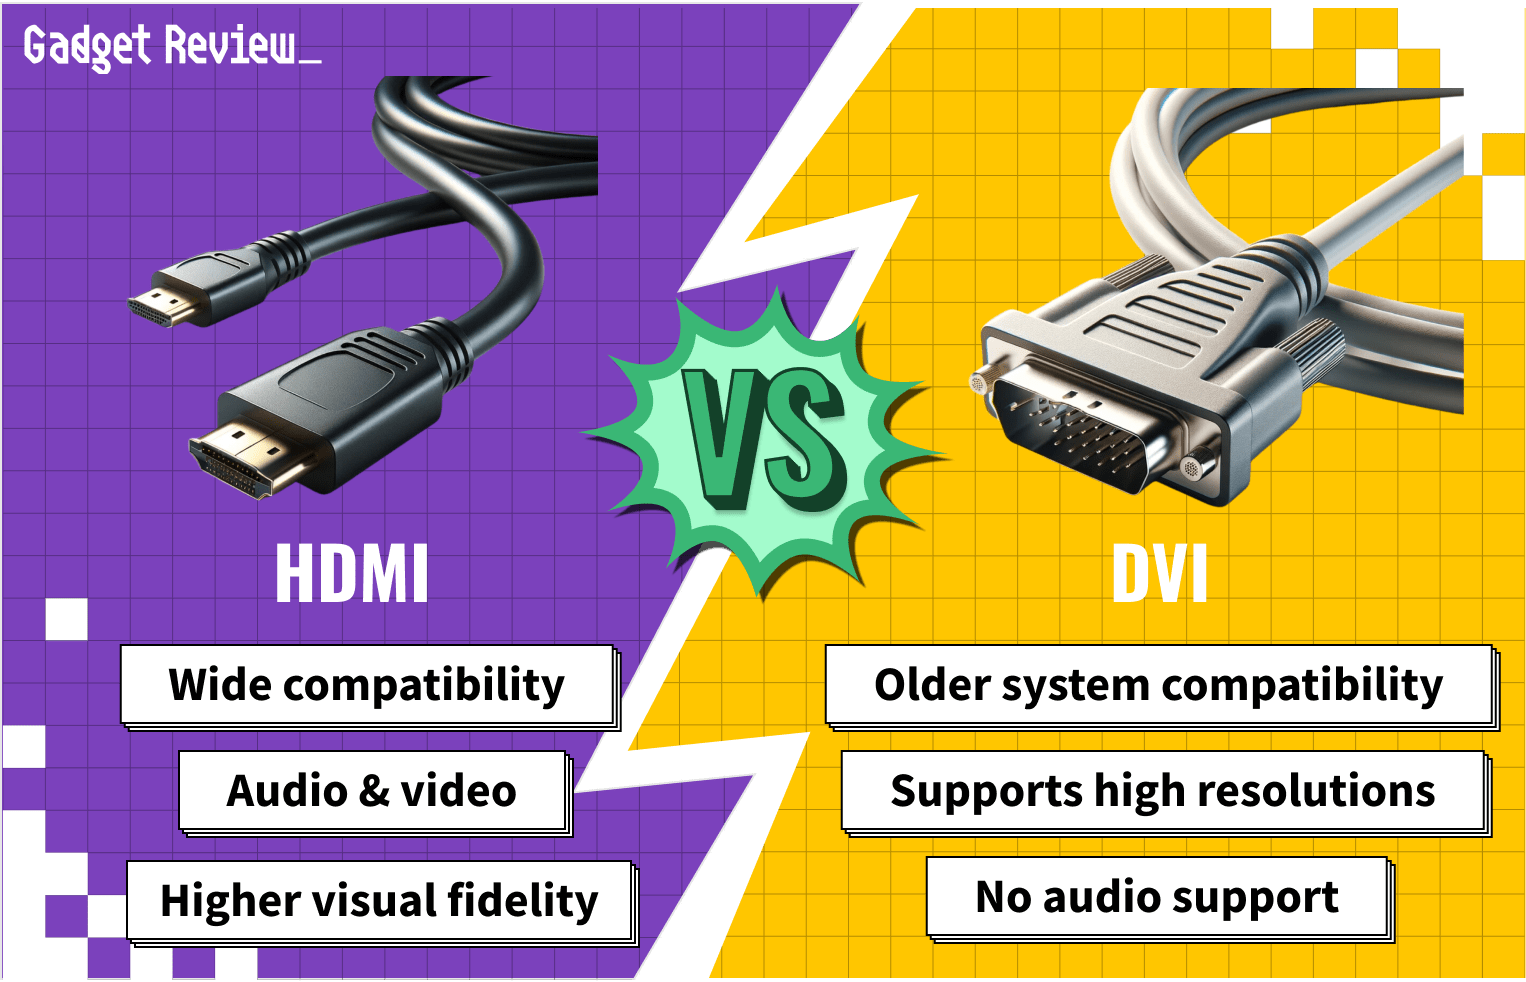 HDMI vs. DVI for Gaming